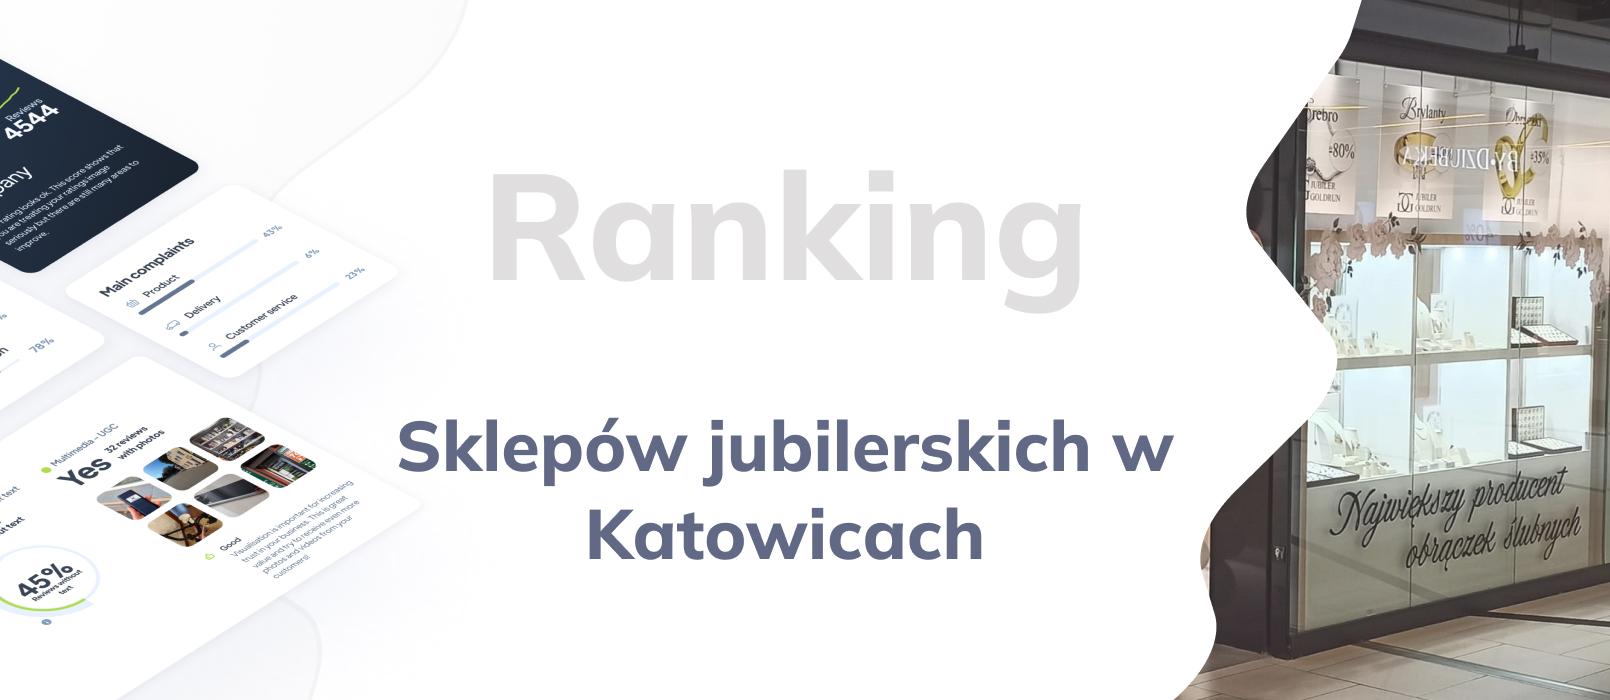 Sklepy jubilerskie w Katowicach - ranking TOP 10